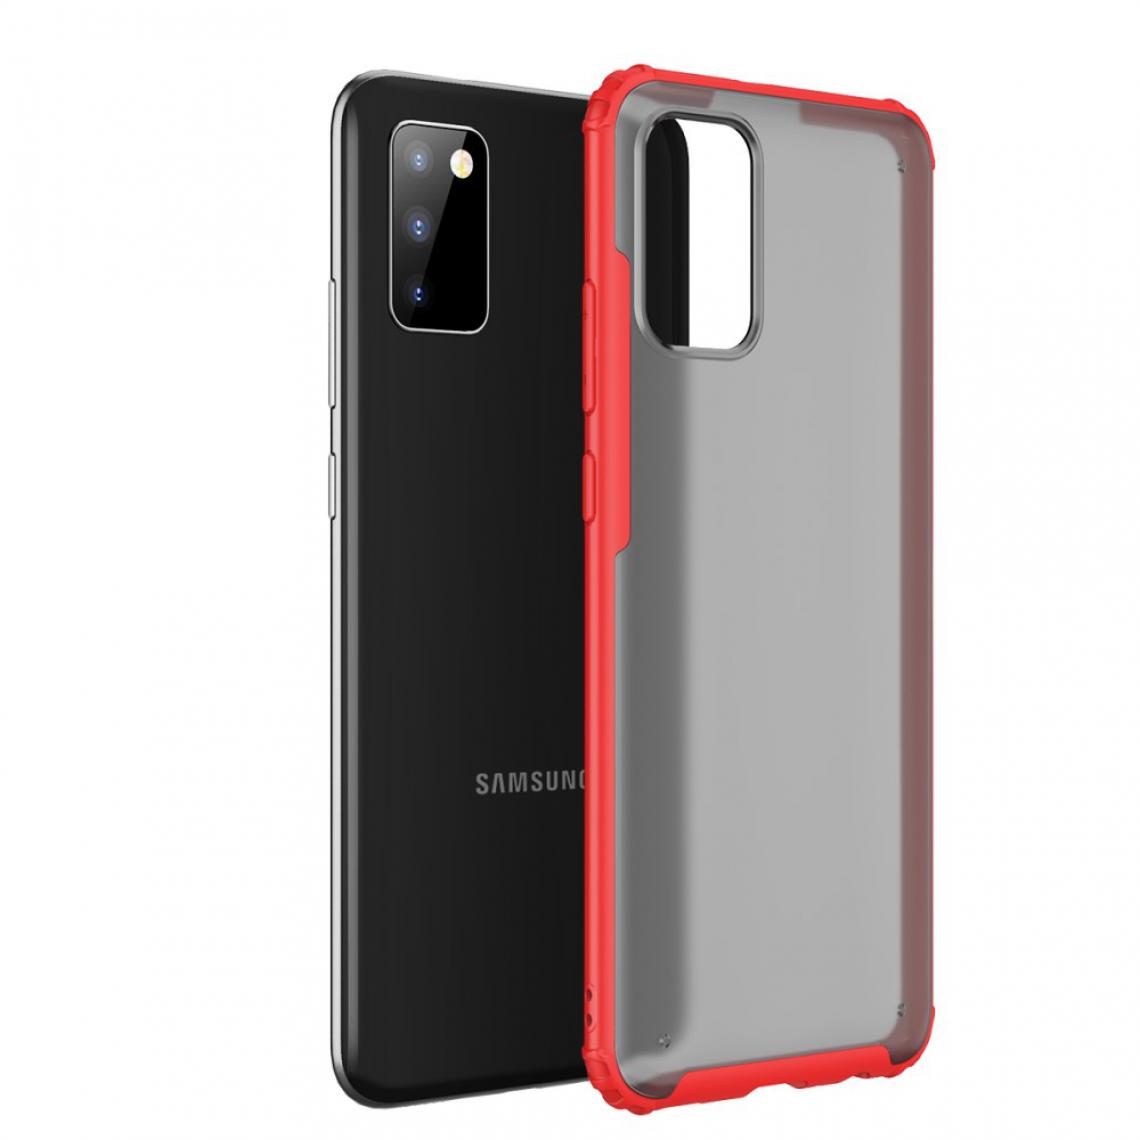 Other - Coque en TPU combo surface mate anti-empreintes digitales série armor rouge pour votre Samsung Galaxy A02s - Coque, étui smartphone